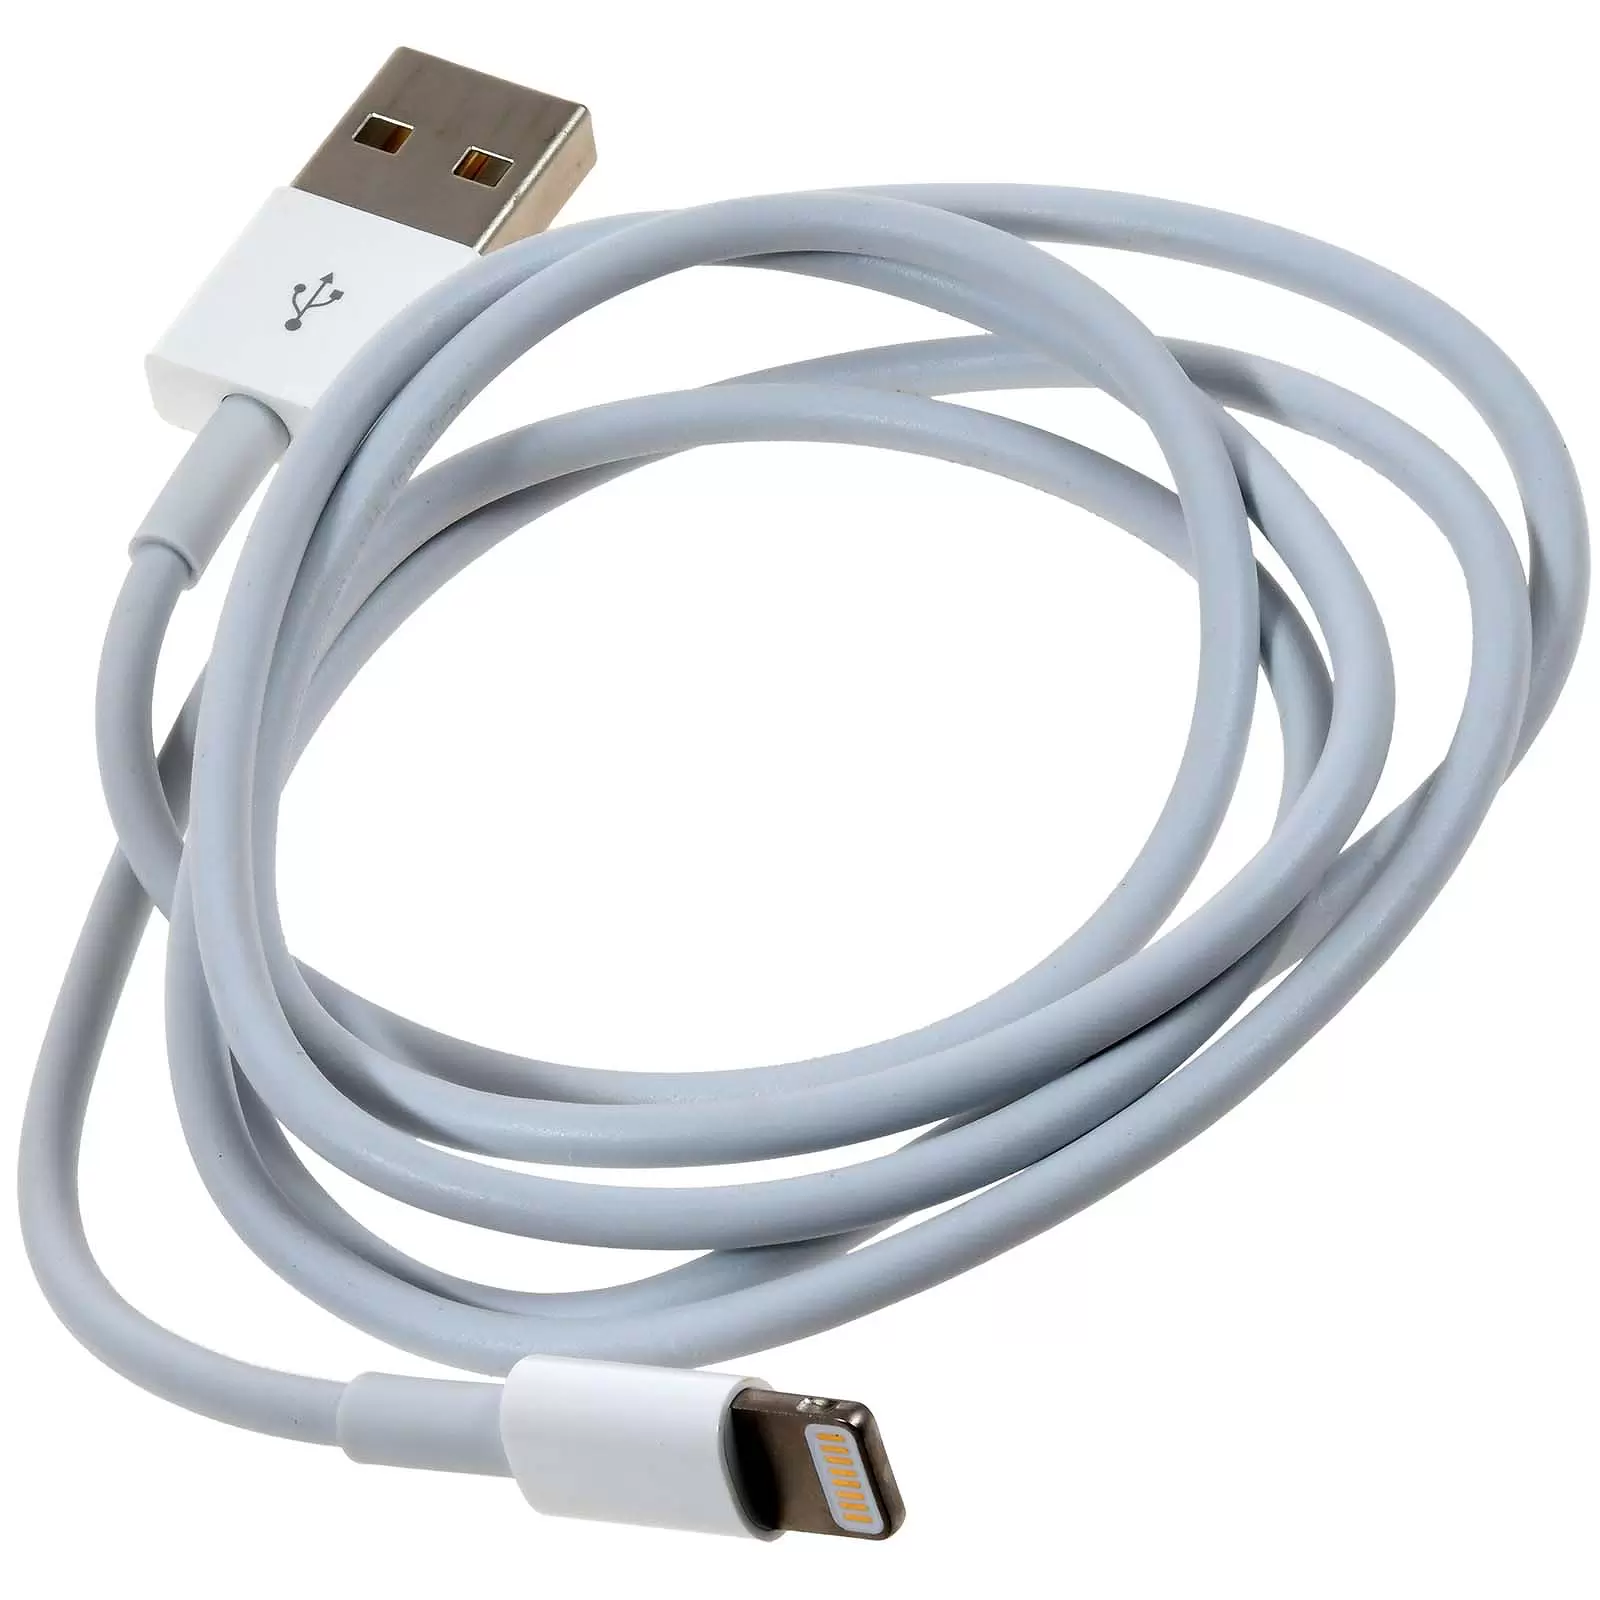 Apple MD818ZM/A Lightning auf USB Ladekabel für iPhone 5 1m